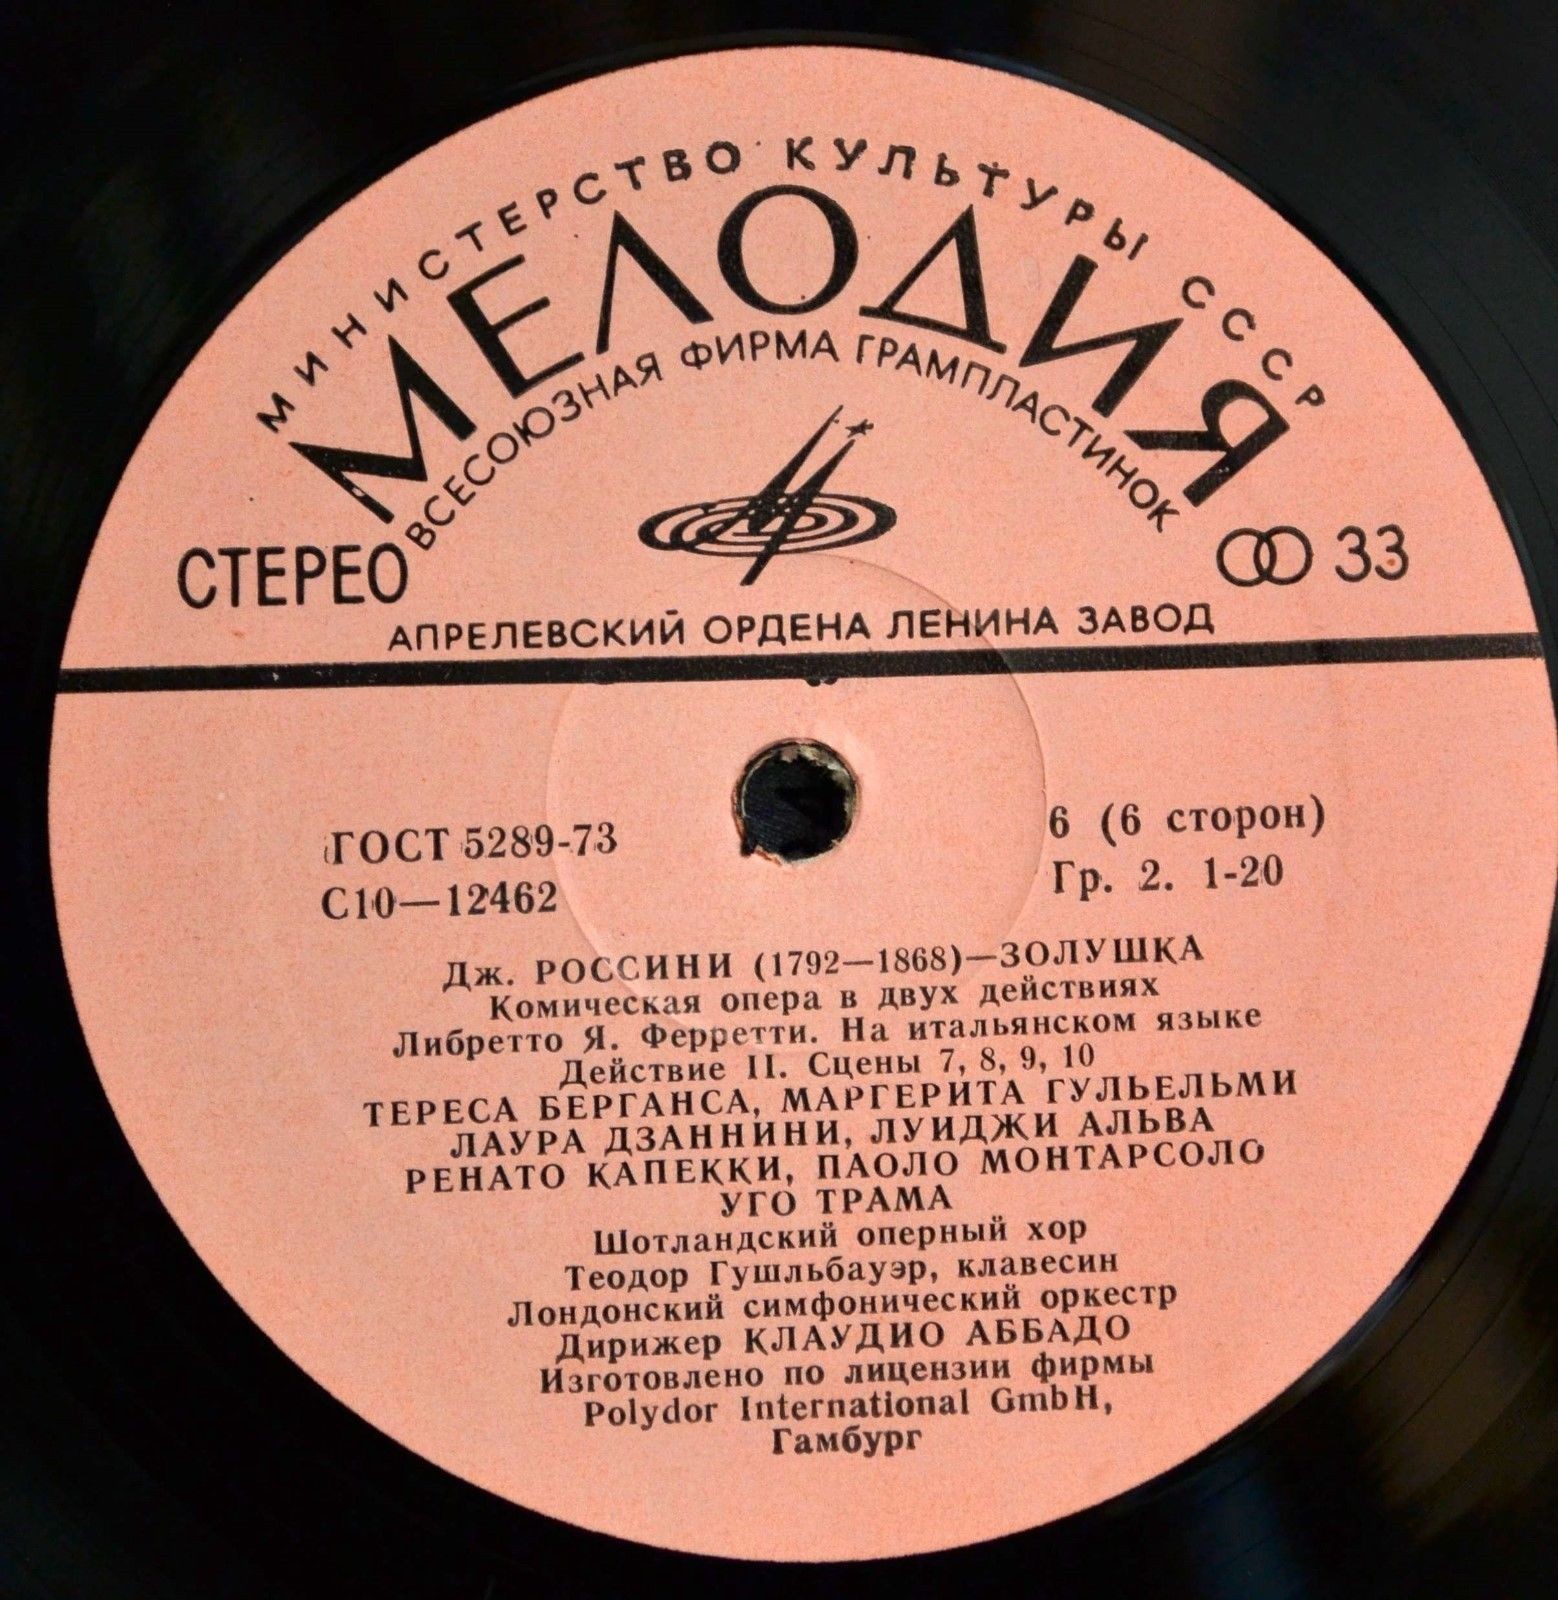 Дж. РОССИНИ (1792—1868): «Золушка», комическая опера в двух действиях (на итальянском яз.). Либретто Я. Ферретти.